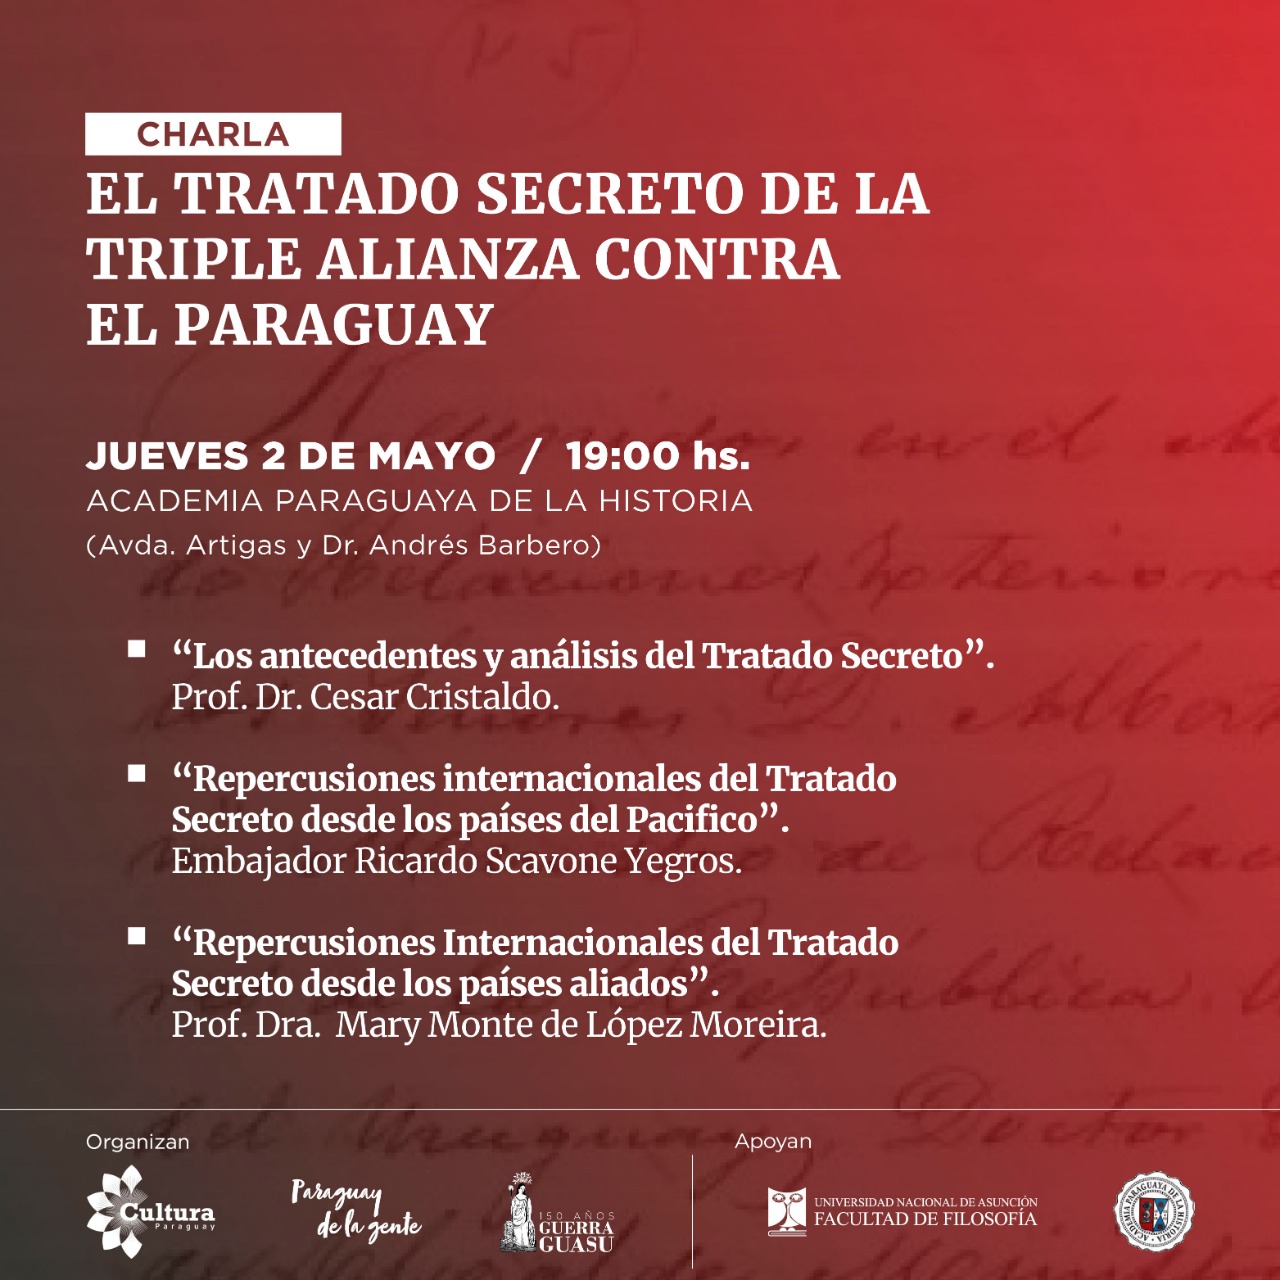 Realizarán conversatorio sobre “El Tratado Secreto de la Triple Alianza contra el Paraguay” imagen